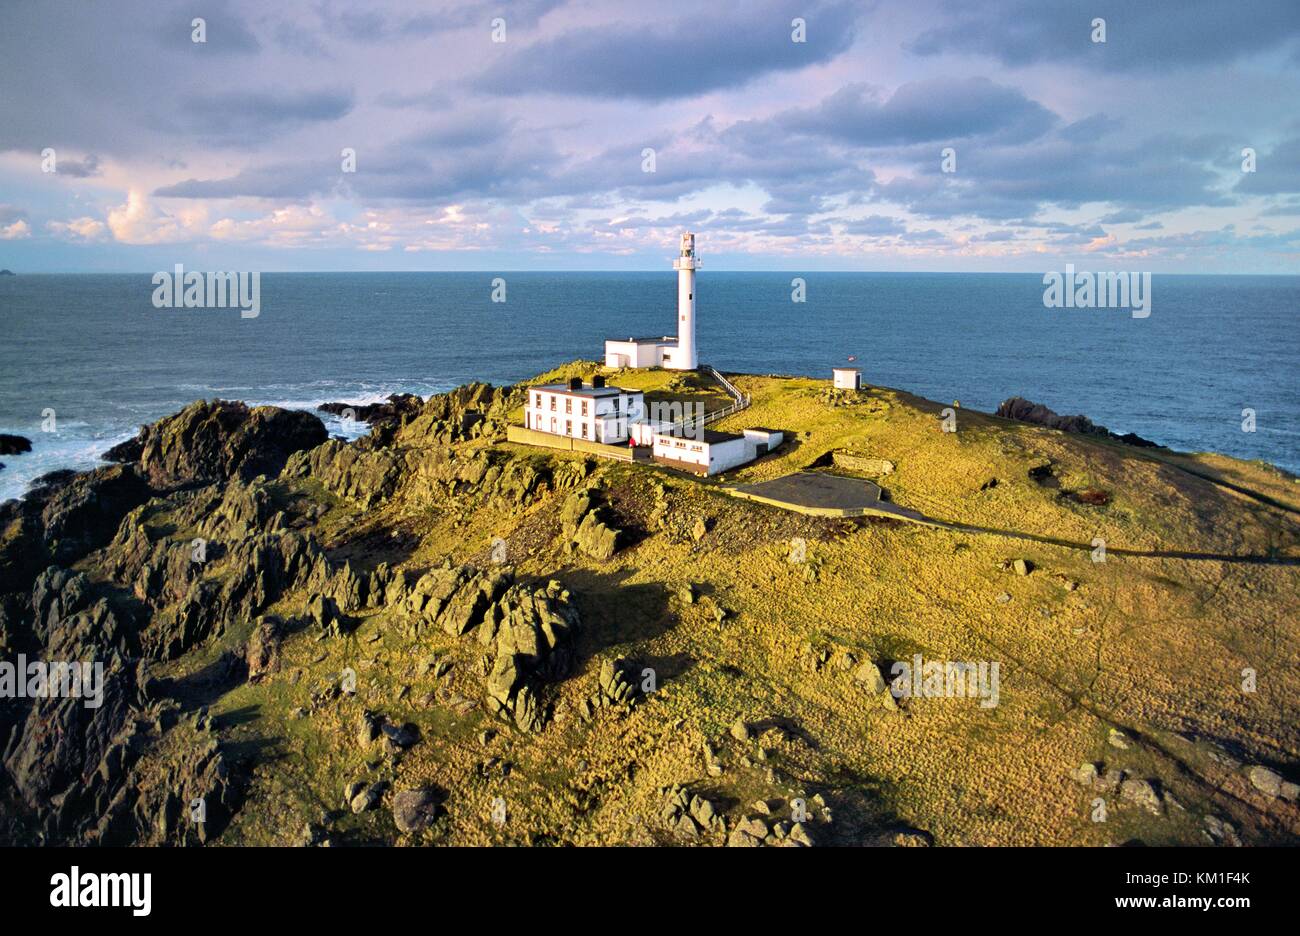 Vue aérienne de phare sur Inishtrahull Inishtrahull Island au nord de Malin Head, comté de Donegal, Irlande. Banque D'Images